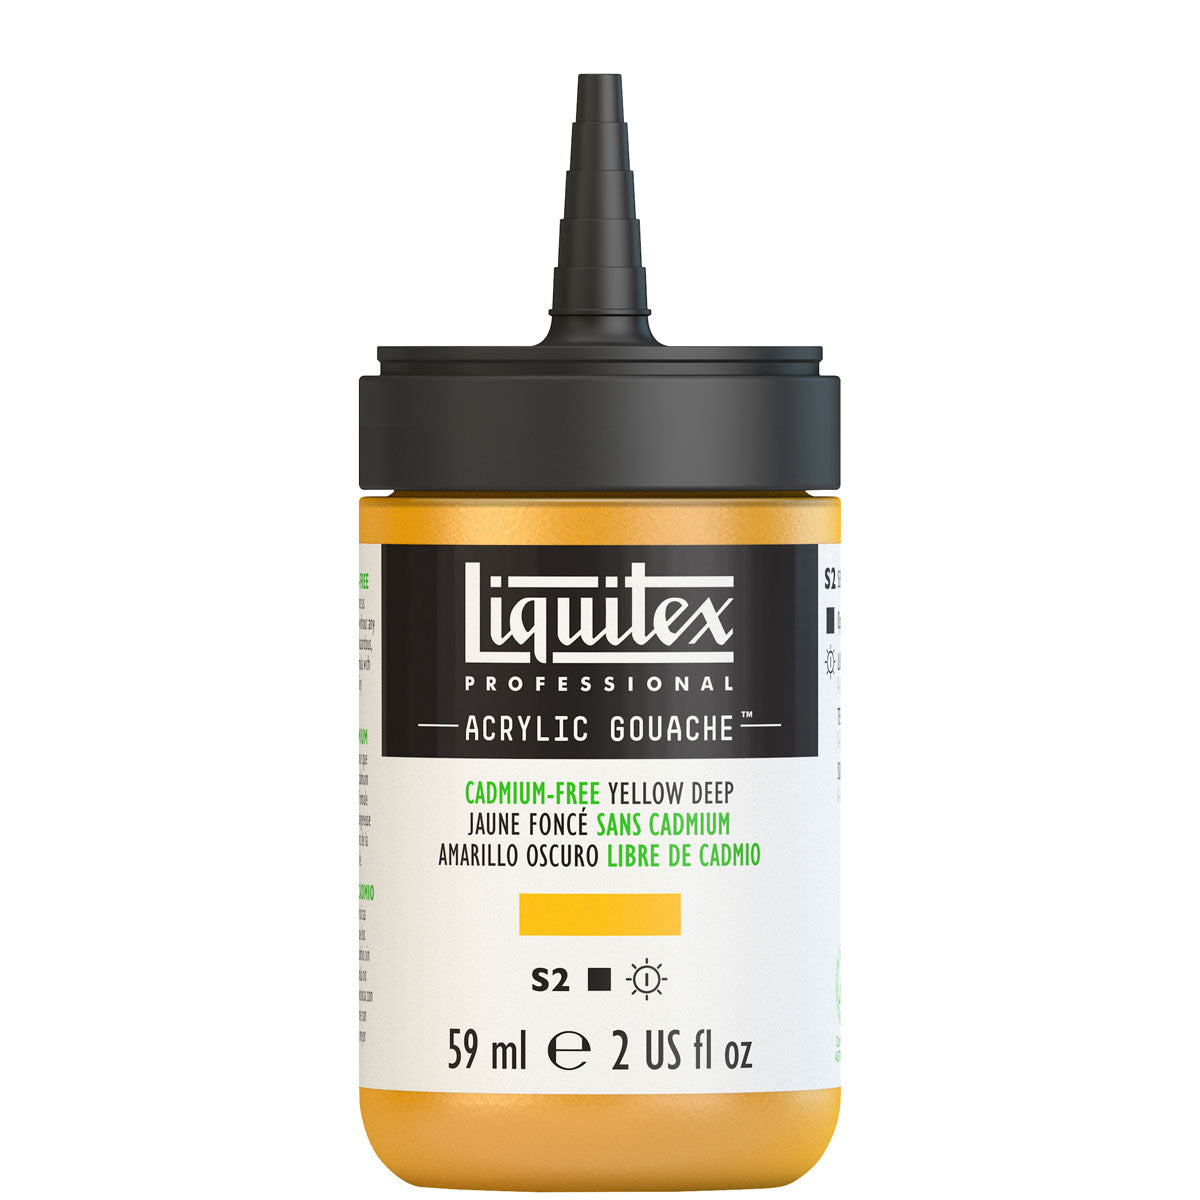 Liquitex-Gouache Acrylique 59ml S2-Jaune Foncé Sans Cadimum